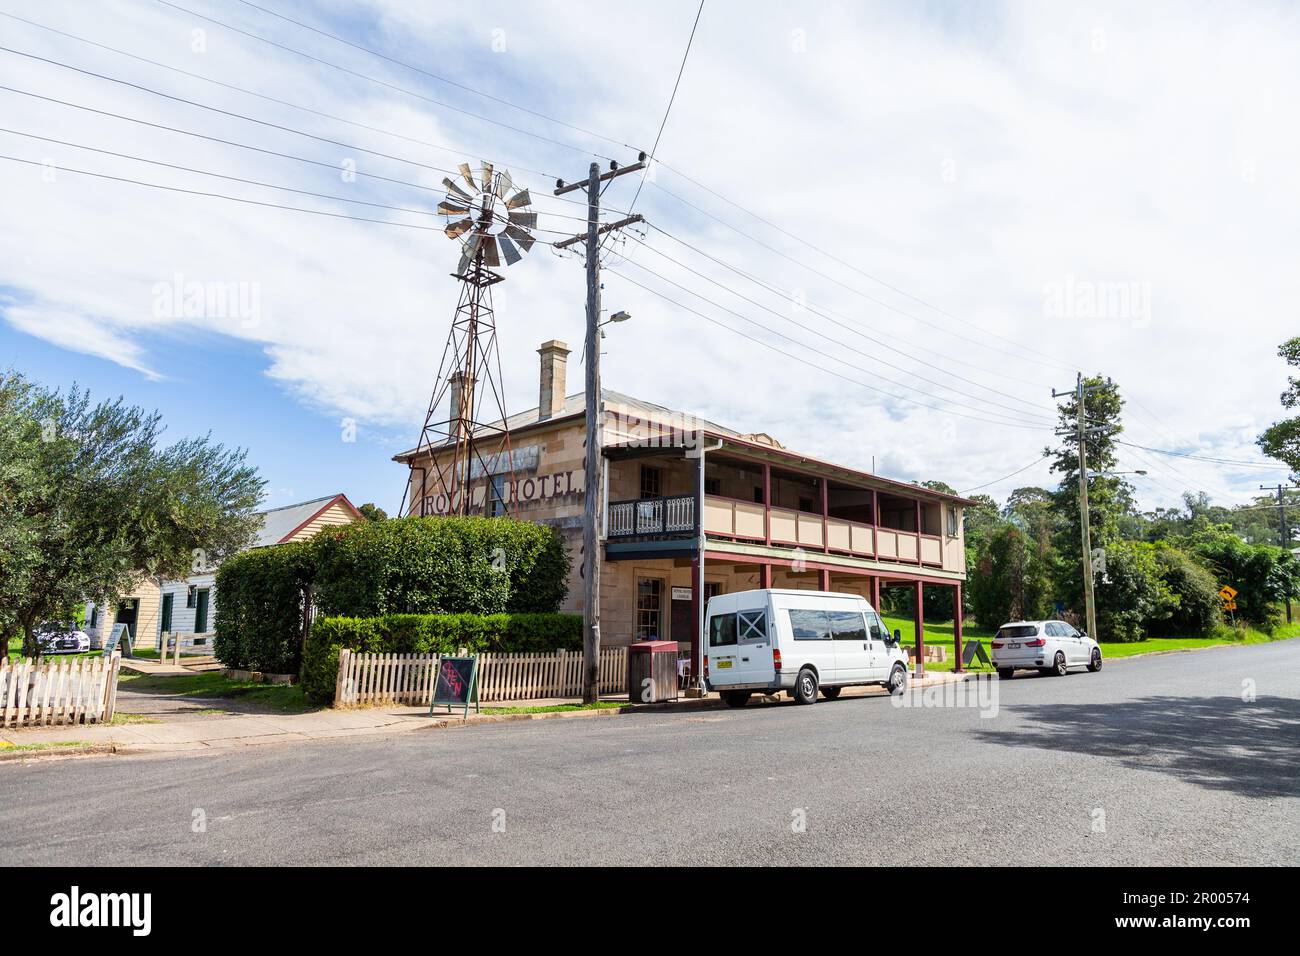 Il Royal Hotel a Cassilis, piccola cittadina rurale australiana con mulino a vento accanto al pub Foto Stock